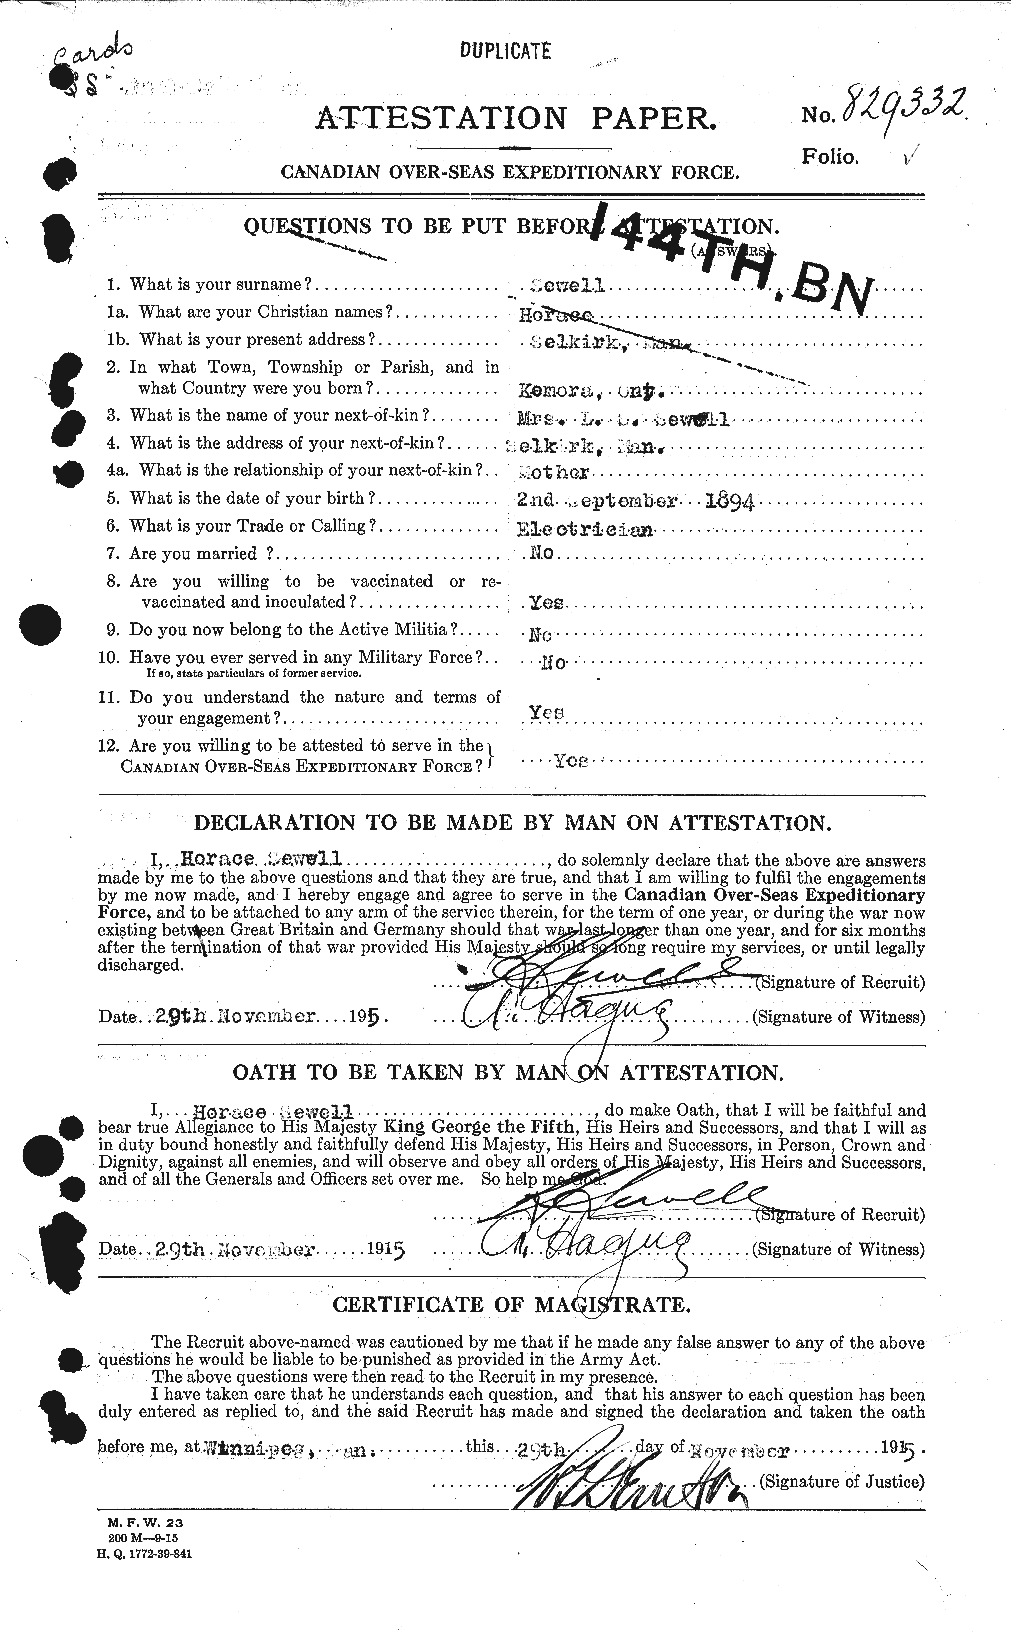 Dossiers du Personnel de la Première Guerre mondiale - CEC 089737a